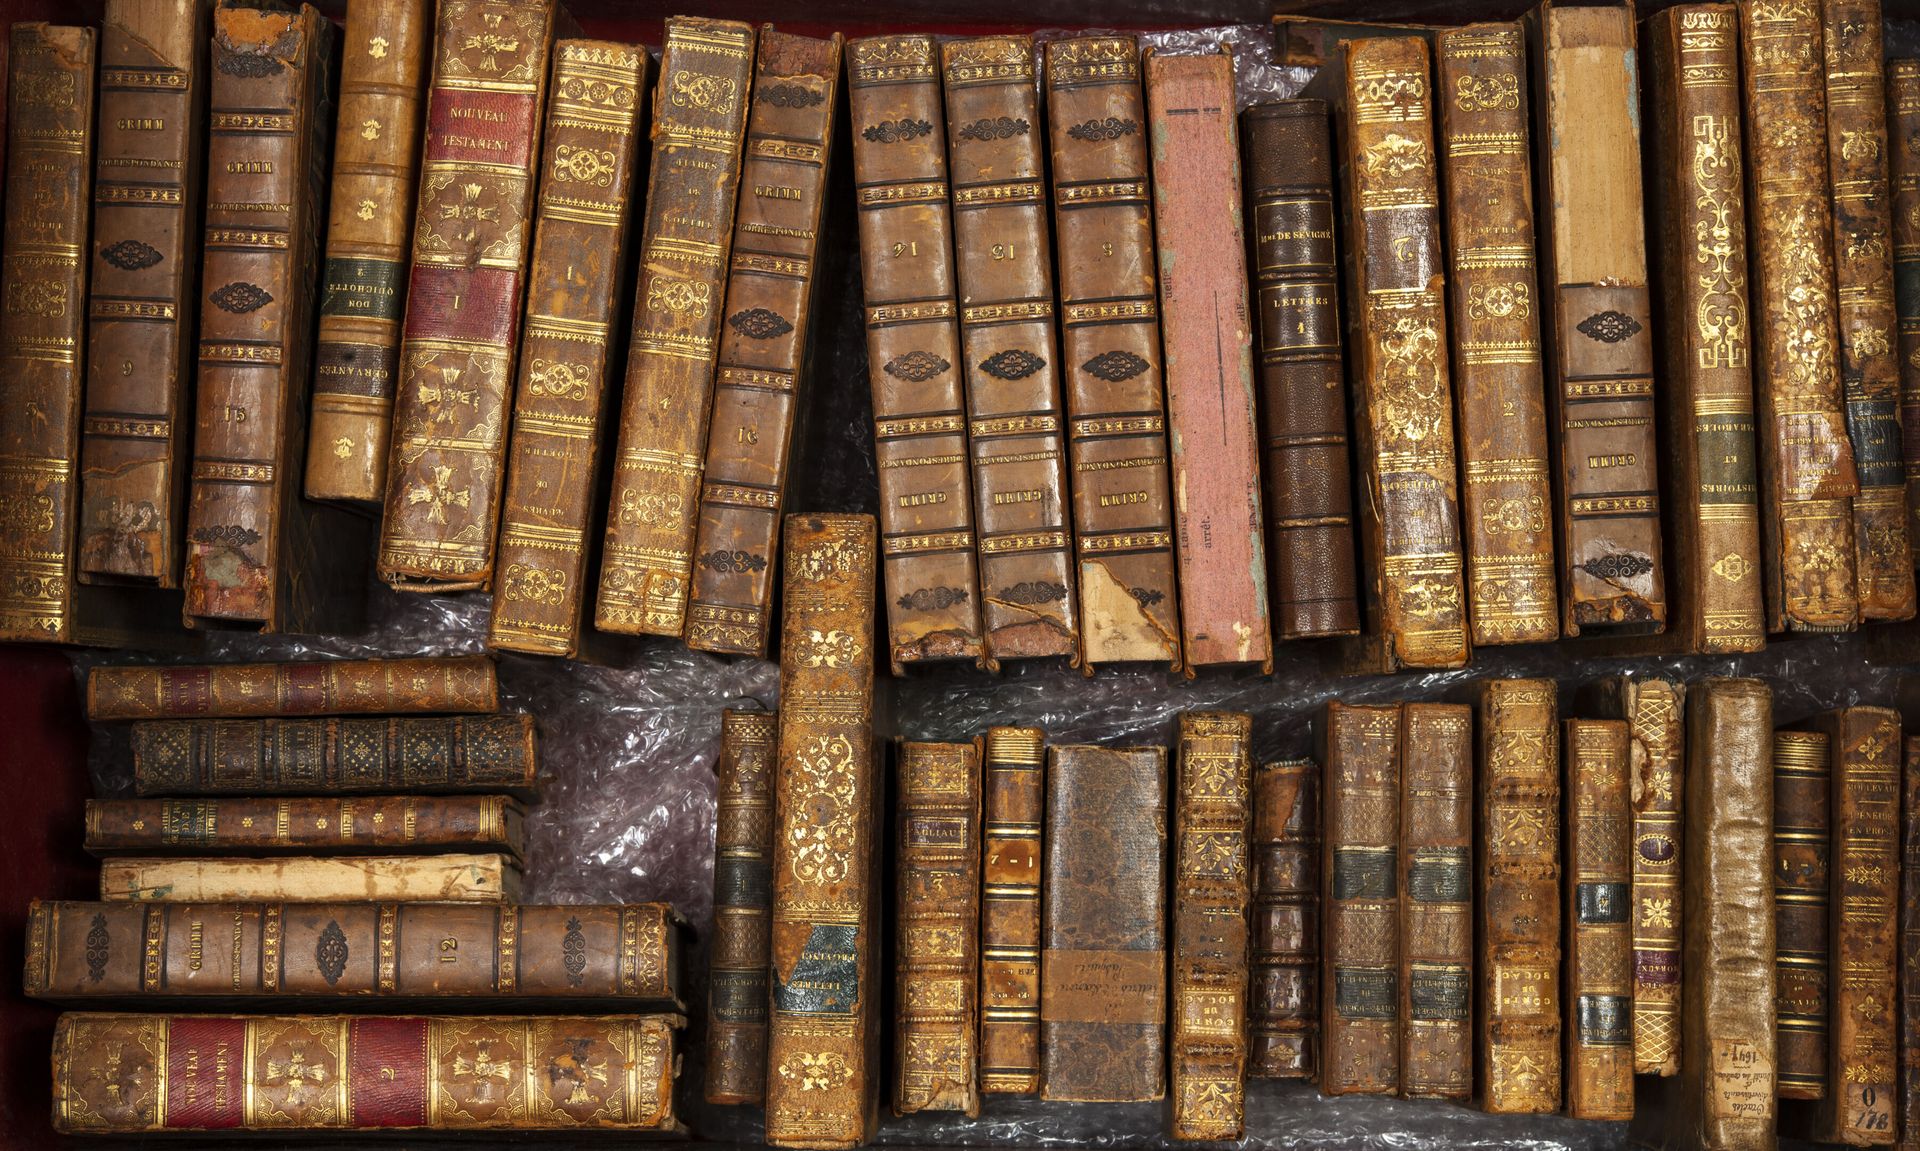 3 caisses de livres : - LOT von alten Büchern in sehr schlechtem Zustand.

- LOT&hellip;